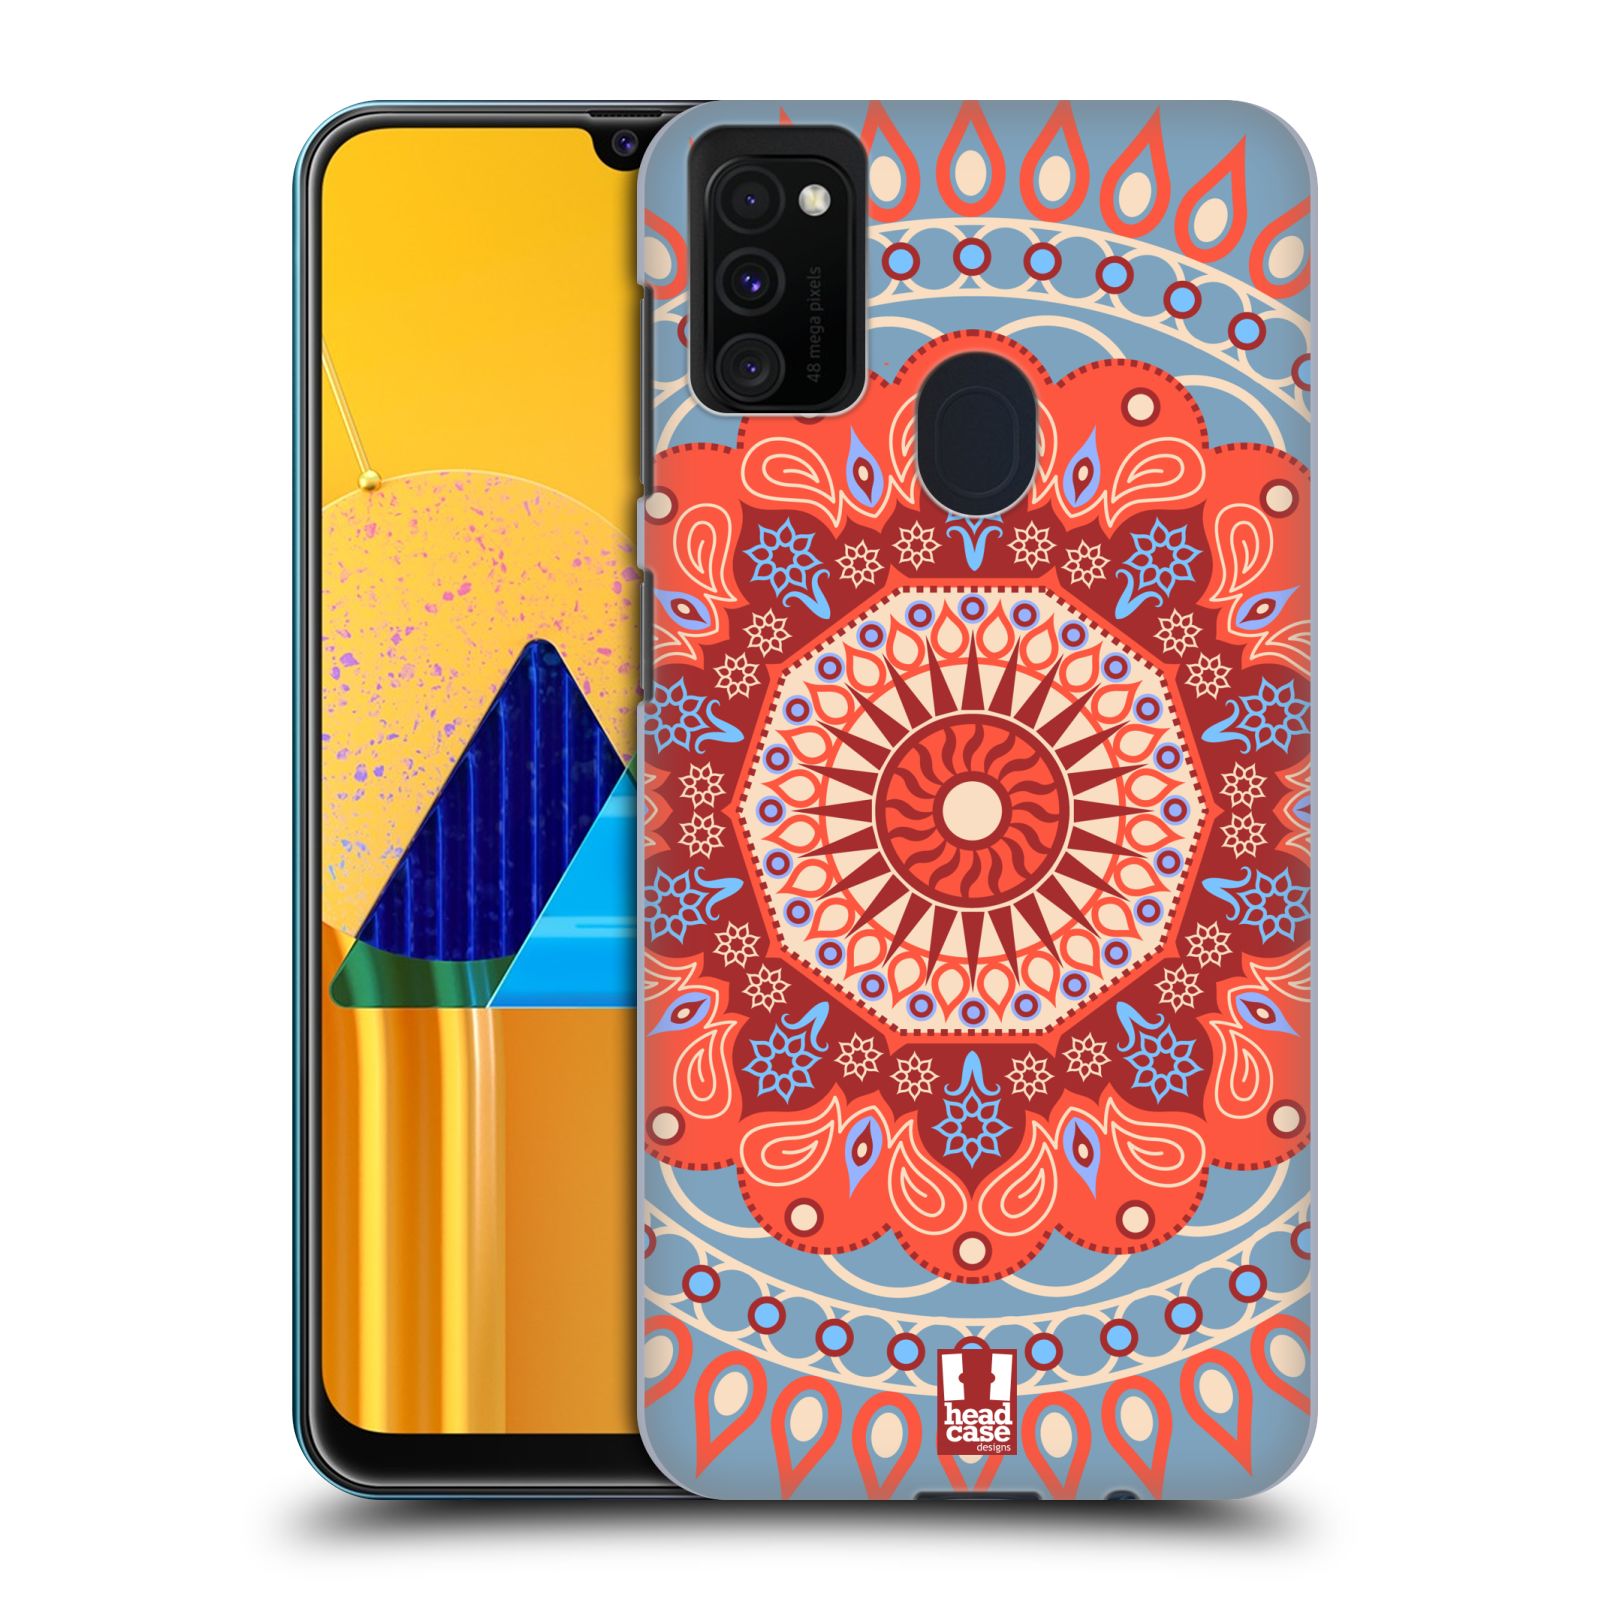 Zadní kryt na mobil Samsung Galaxy M21 vzor Indie Mandala slunce barevný motiv ČERVENÁ A MODRÁ